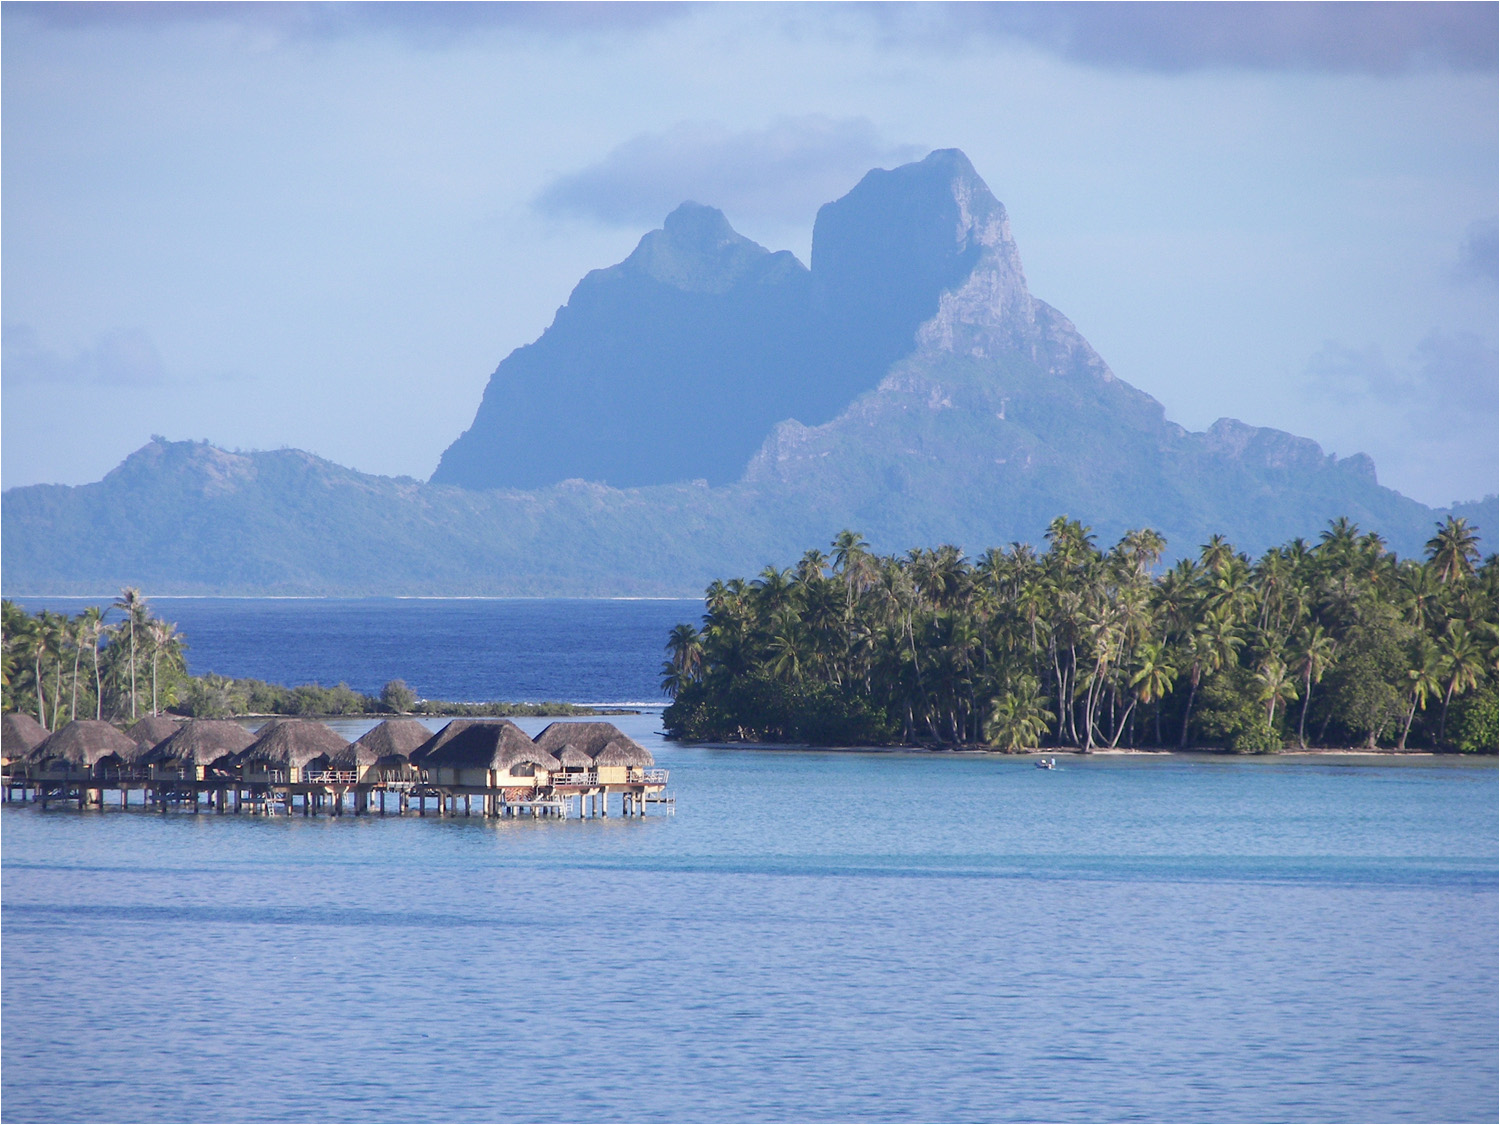 View of Bora Bora from Tahaa lagoon